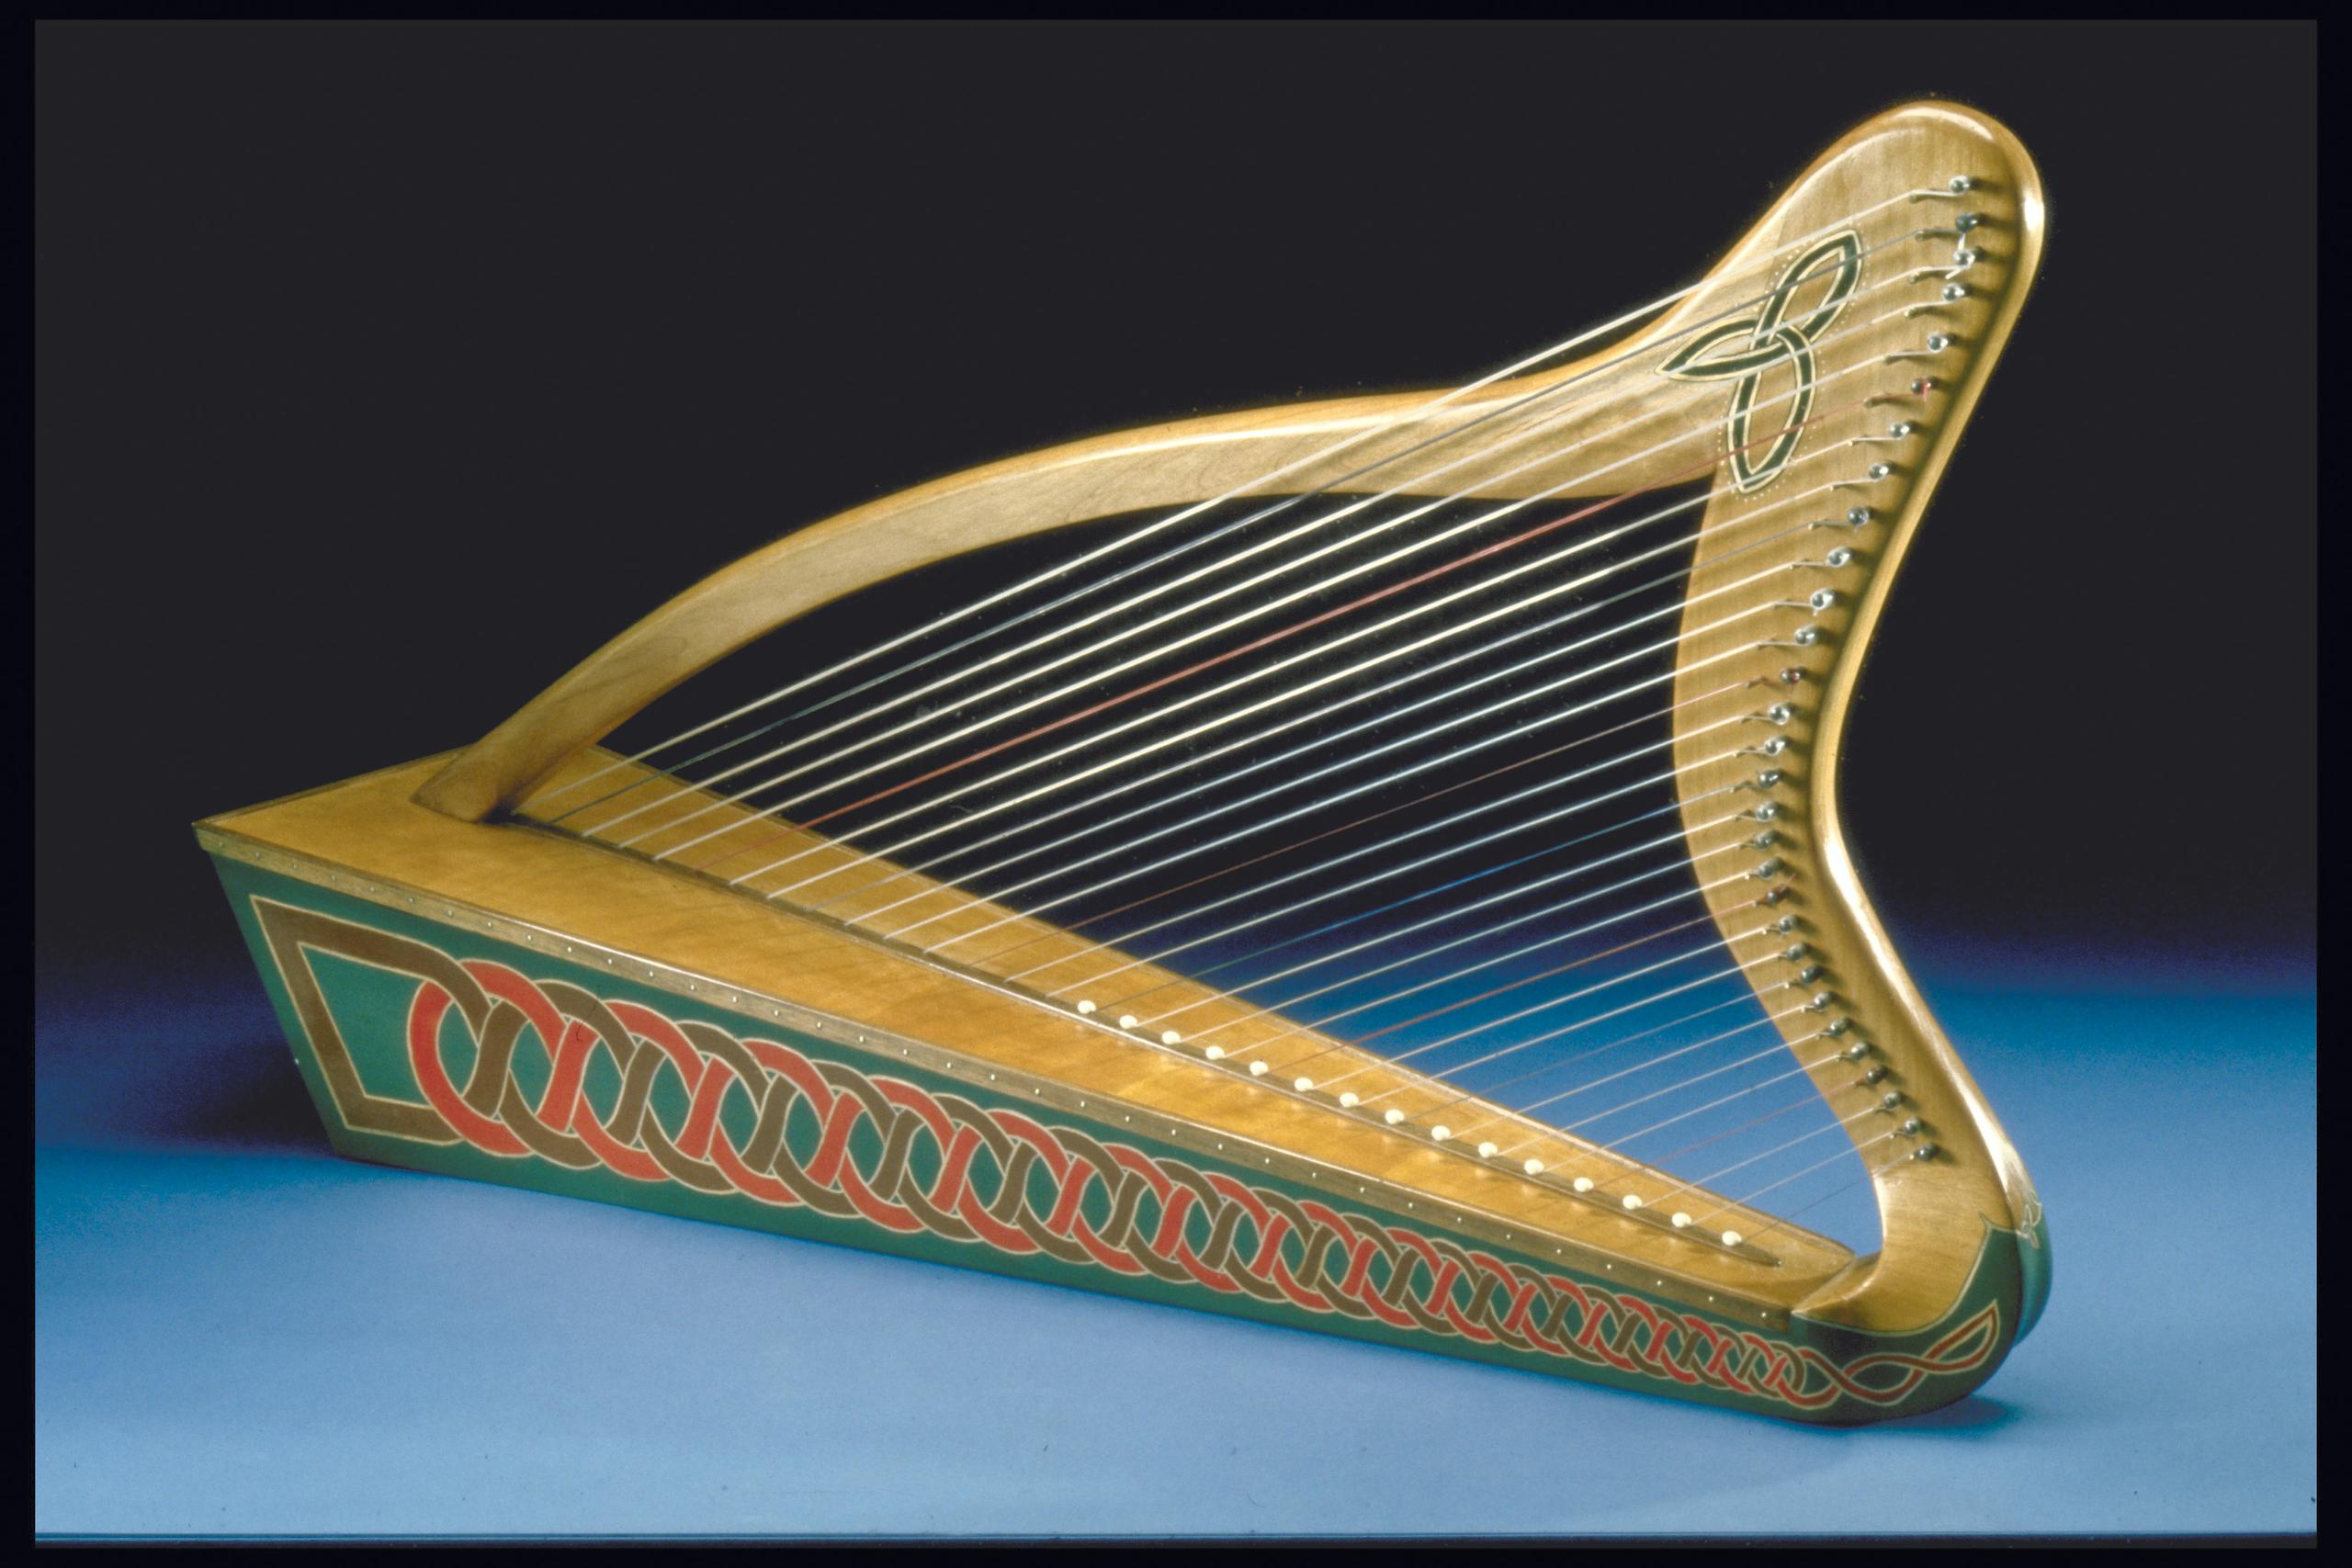 harpe celtique  Musée canadien de l'histoire